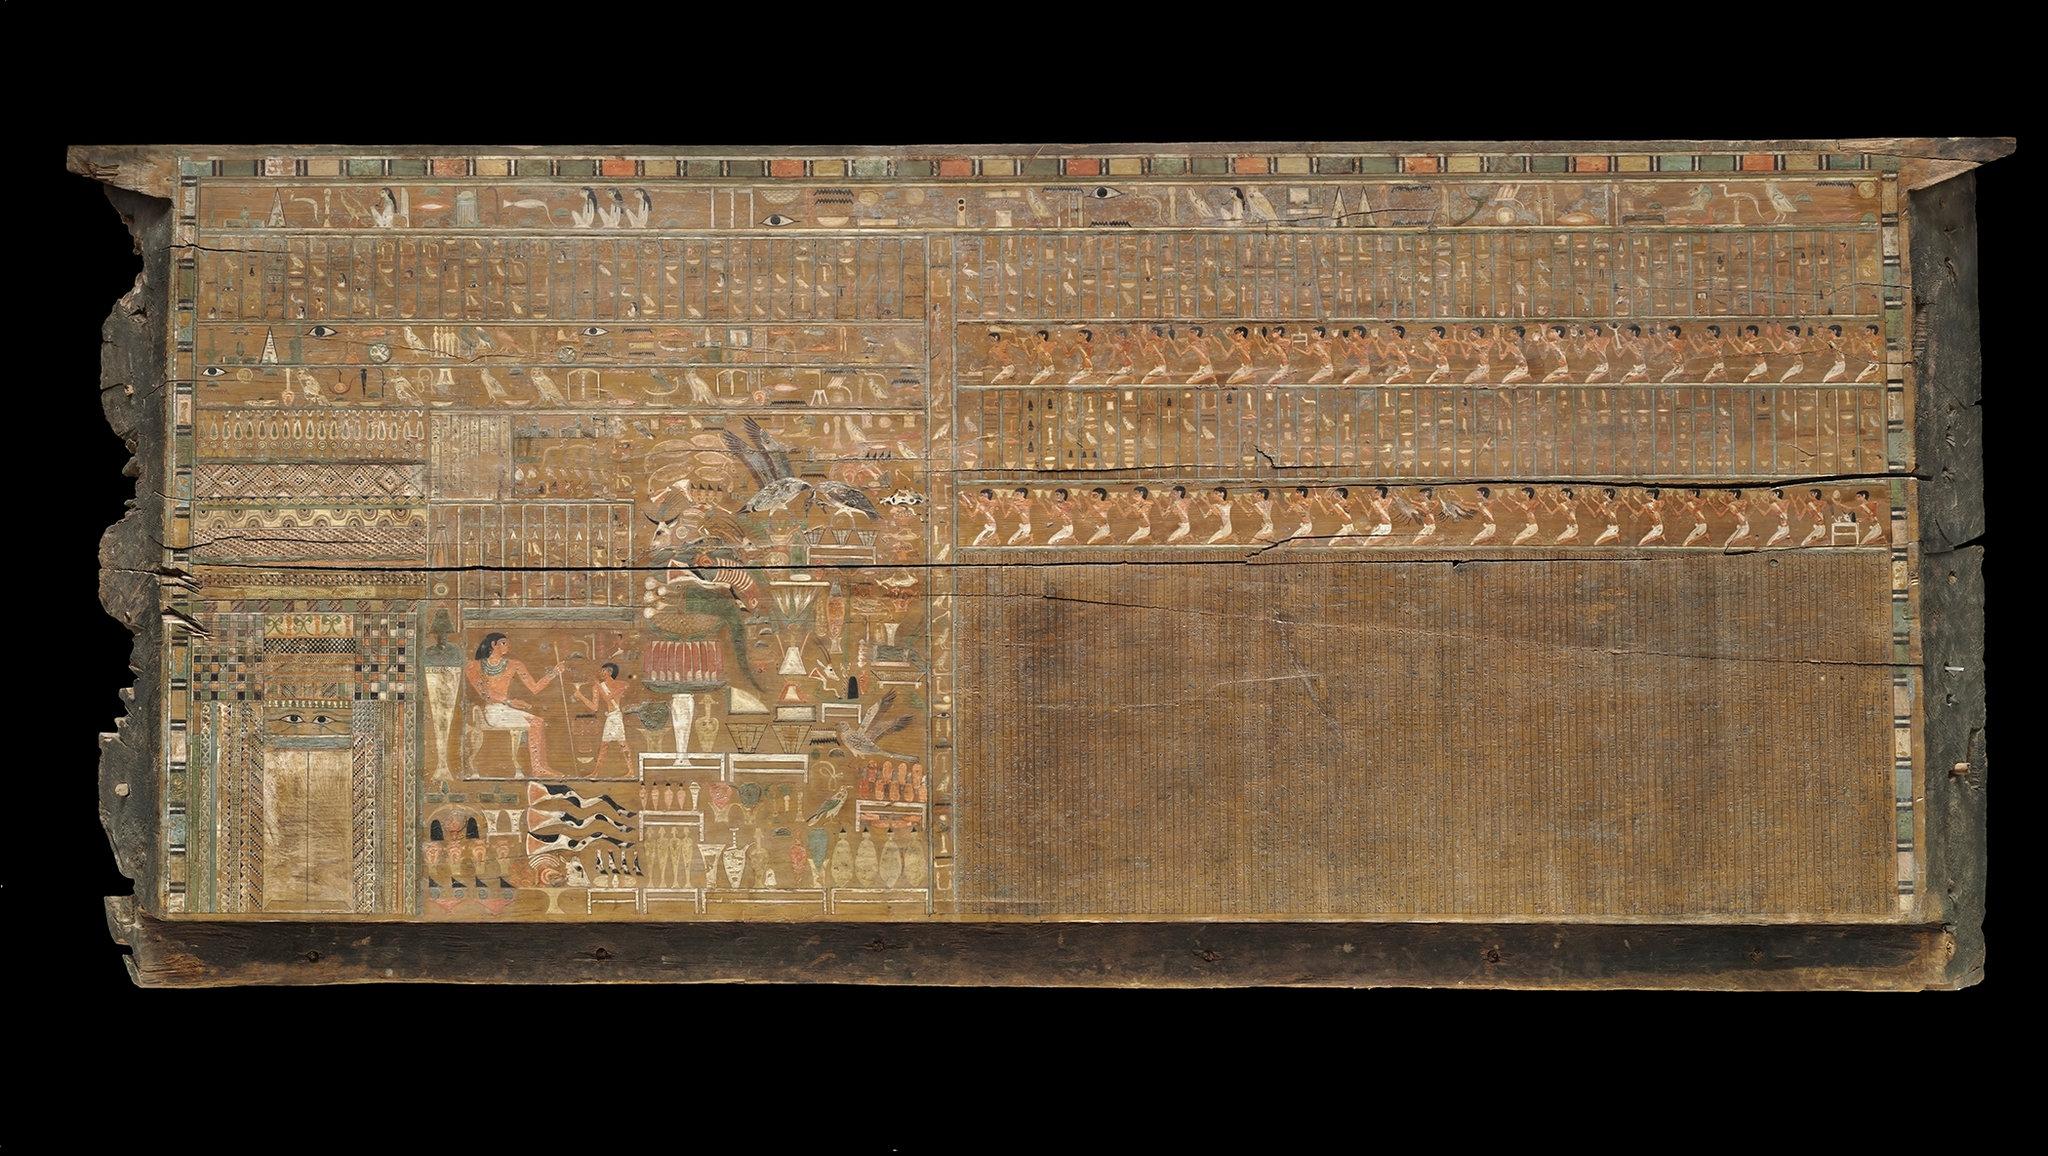 Как ФБР раскрыло тайну оторванной головы 4000-летней мумии